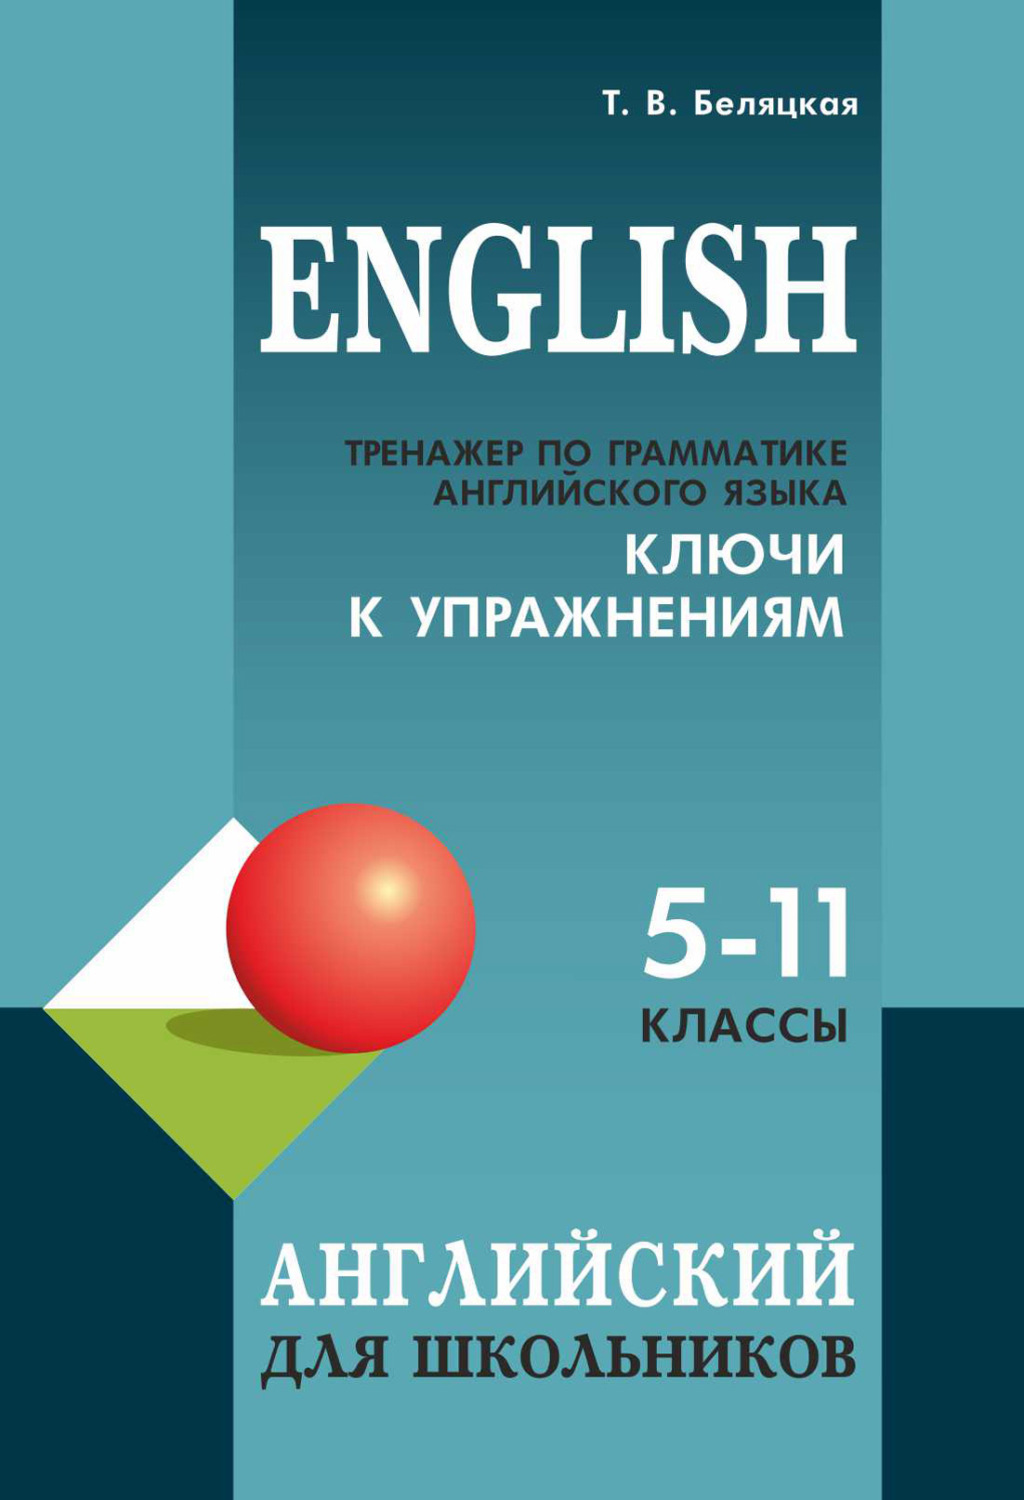 Книга Тренажер по грамматике английского языка. Ключи к упражнениям .